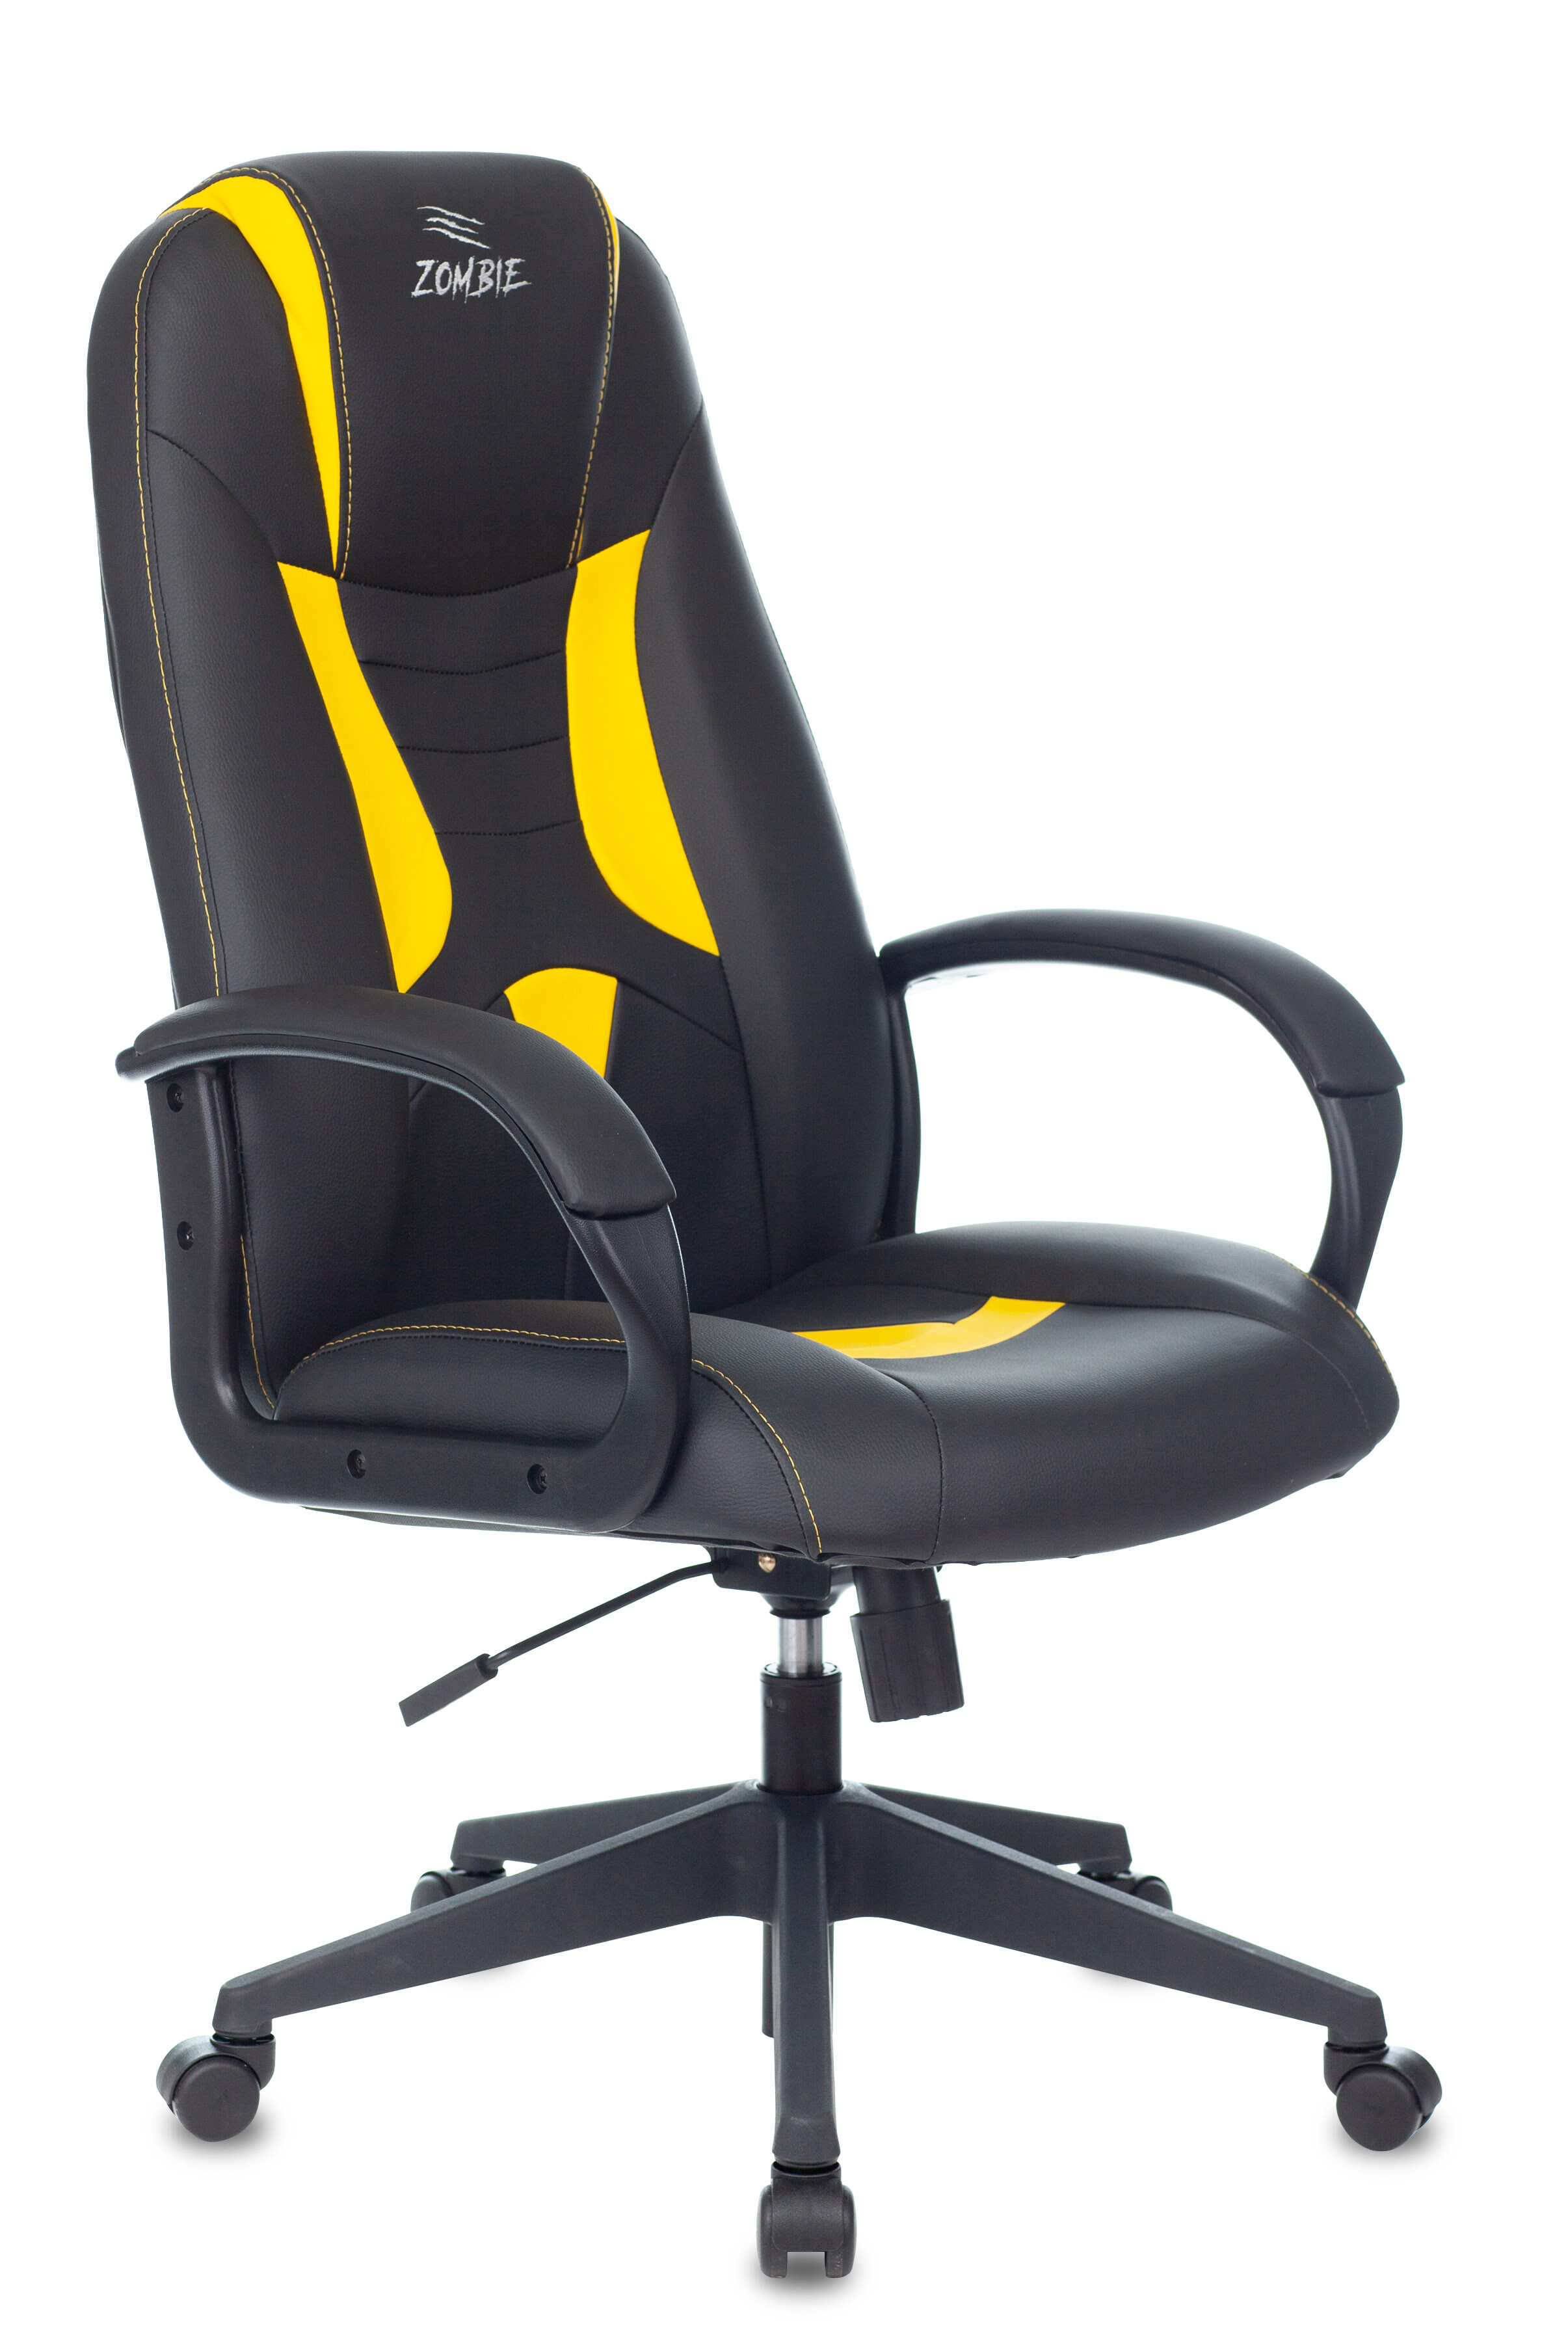 Кресло компьютерное экокожа черное, желтое Zombie 8